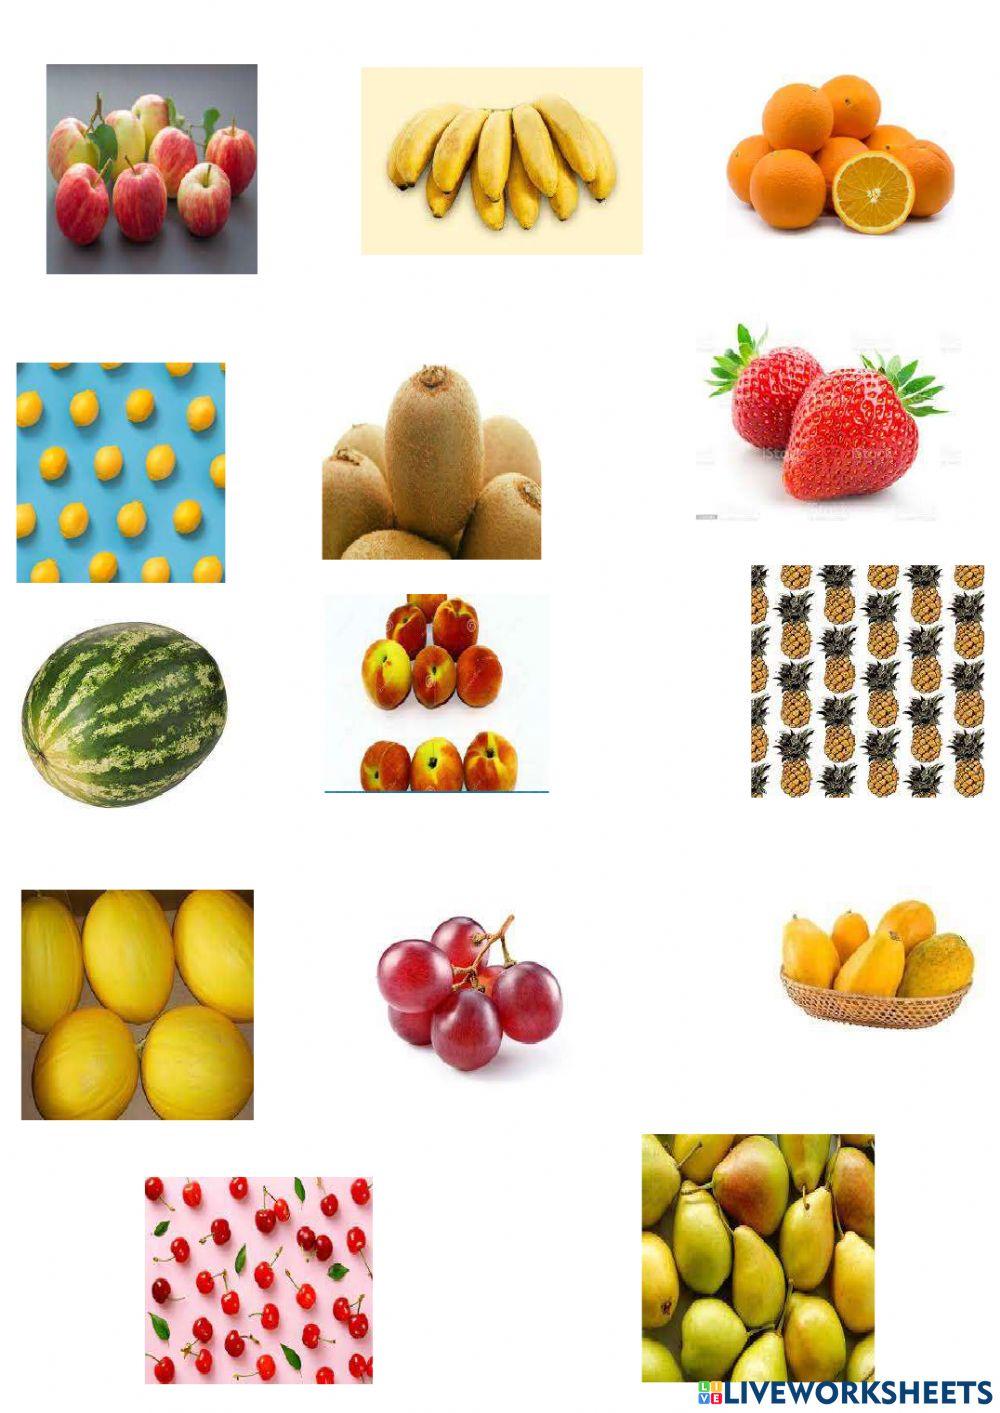 How many fruits